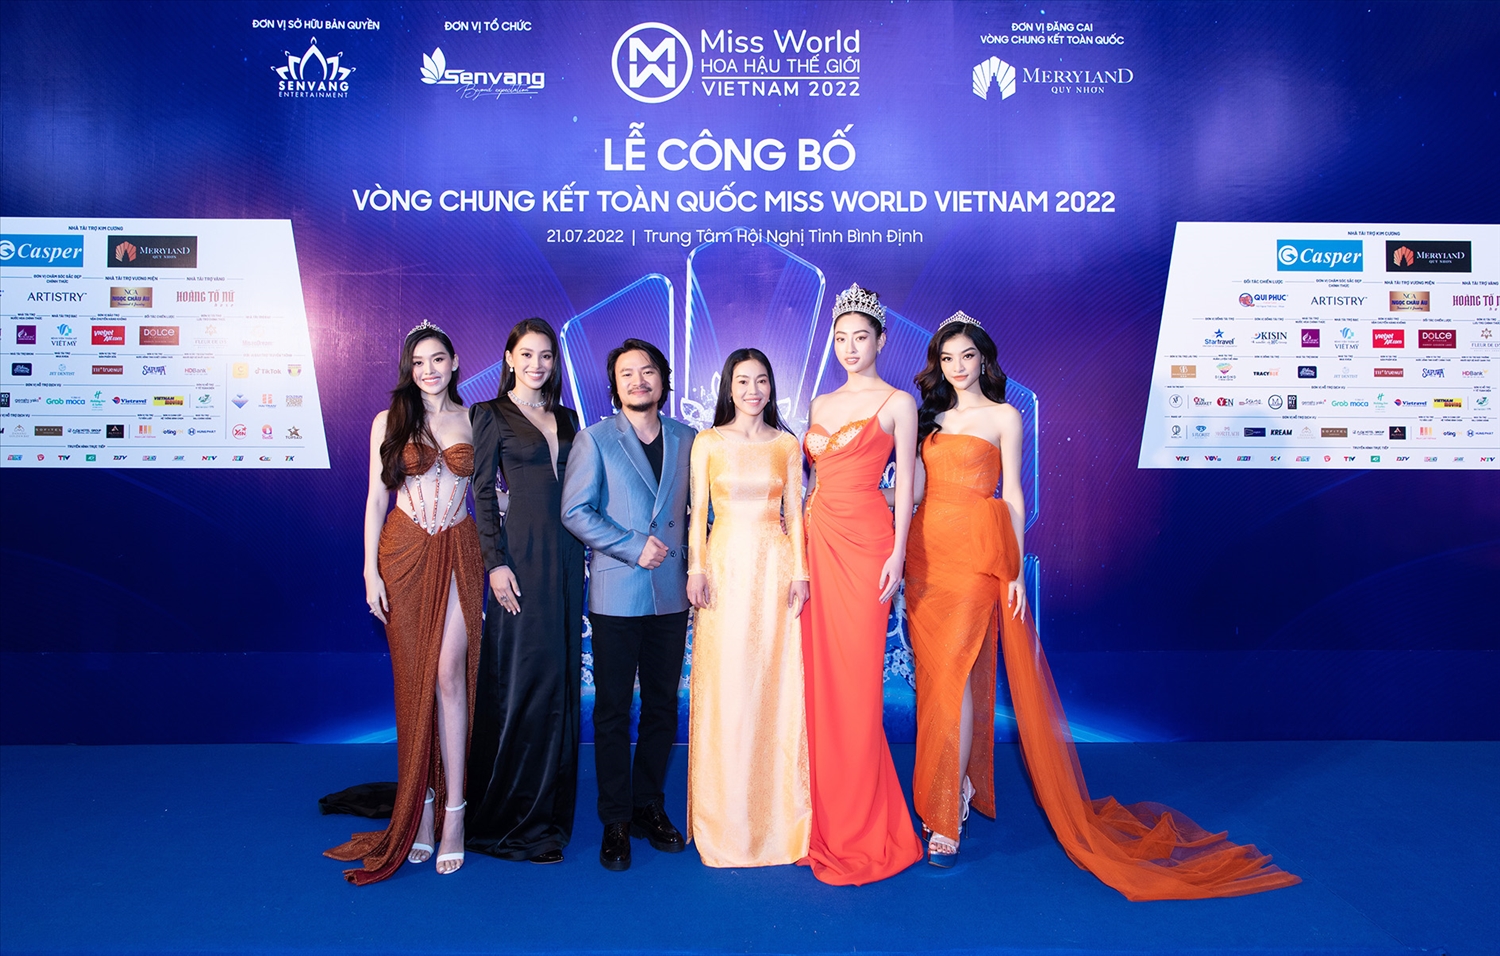 Lễ công bố vòng Chung kết vòng Chung kết Miss World Vietnam 2022 tại Bình Định